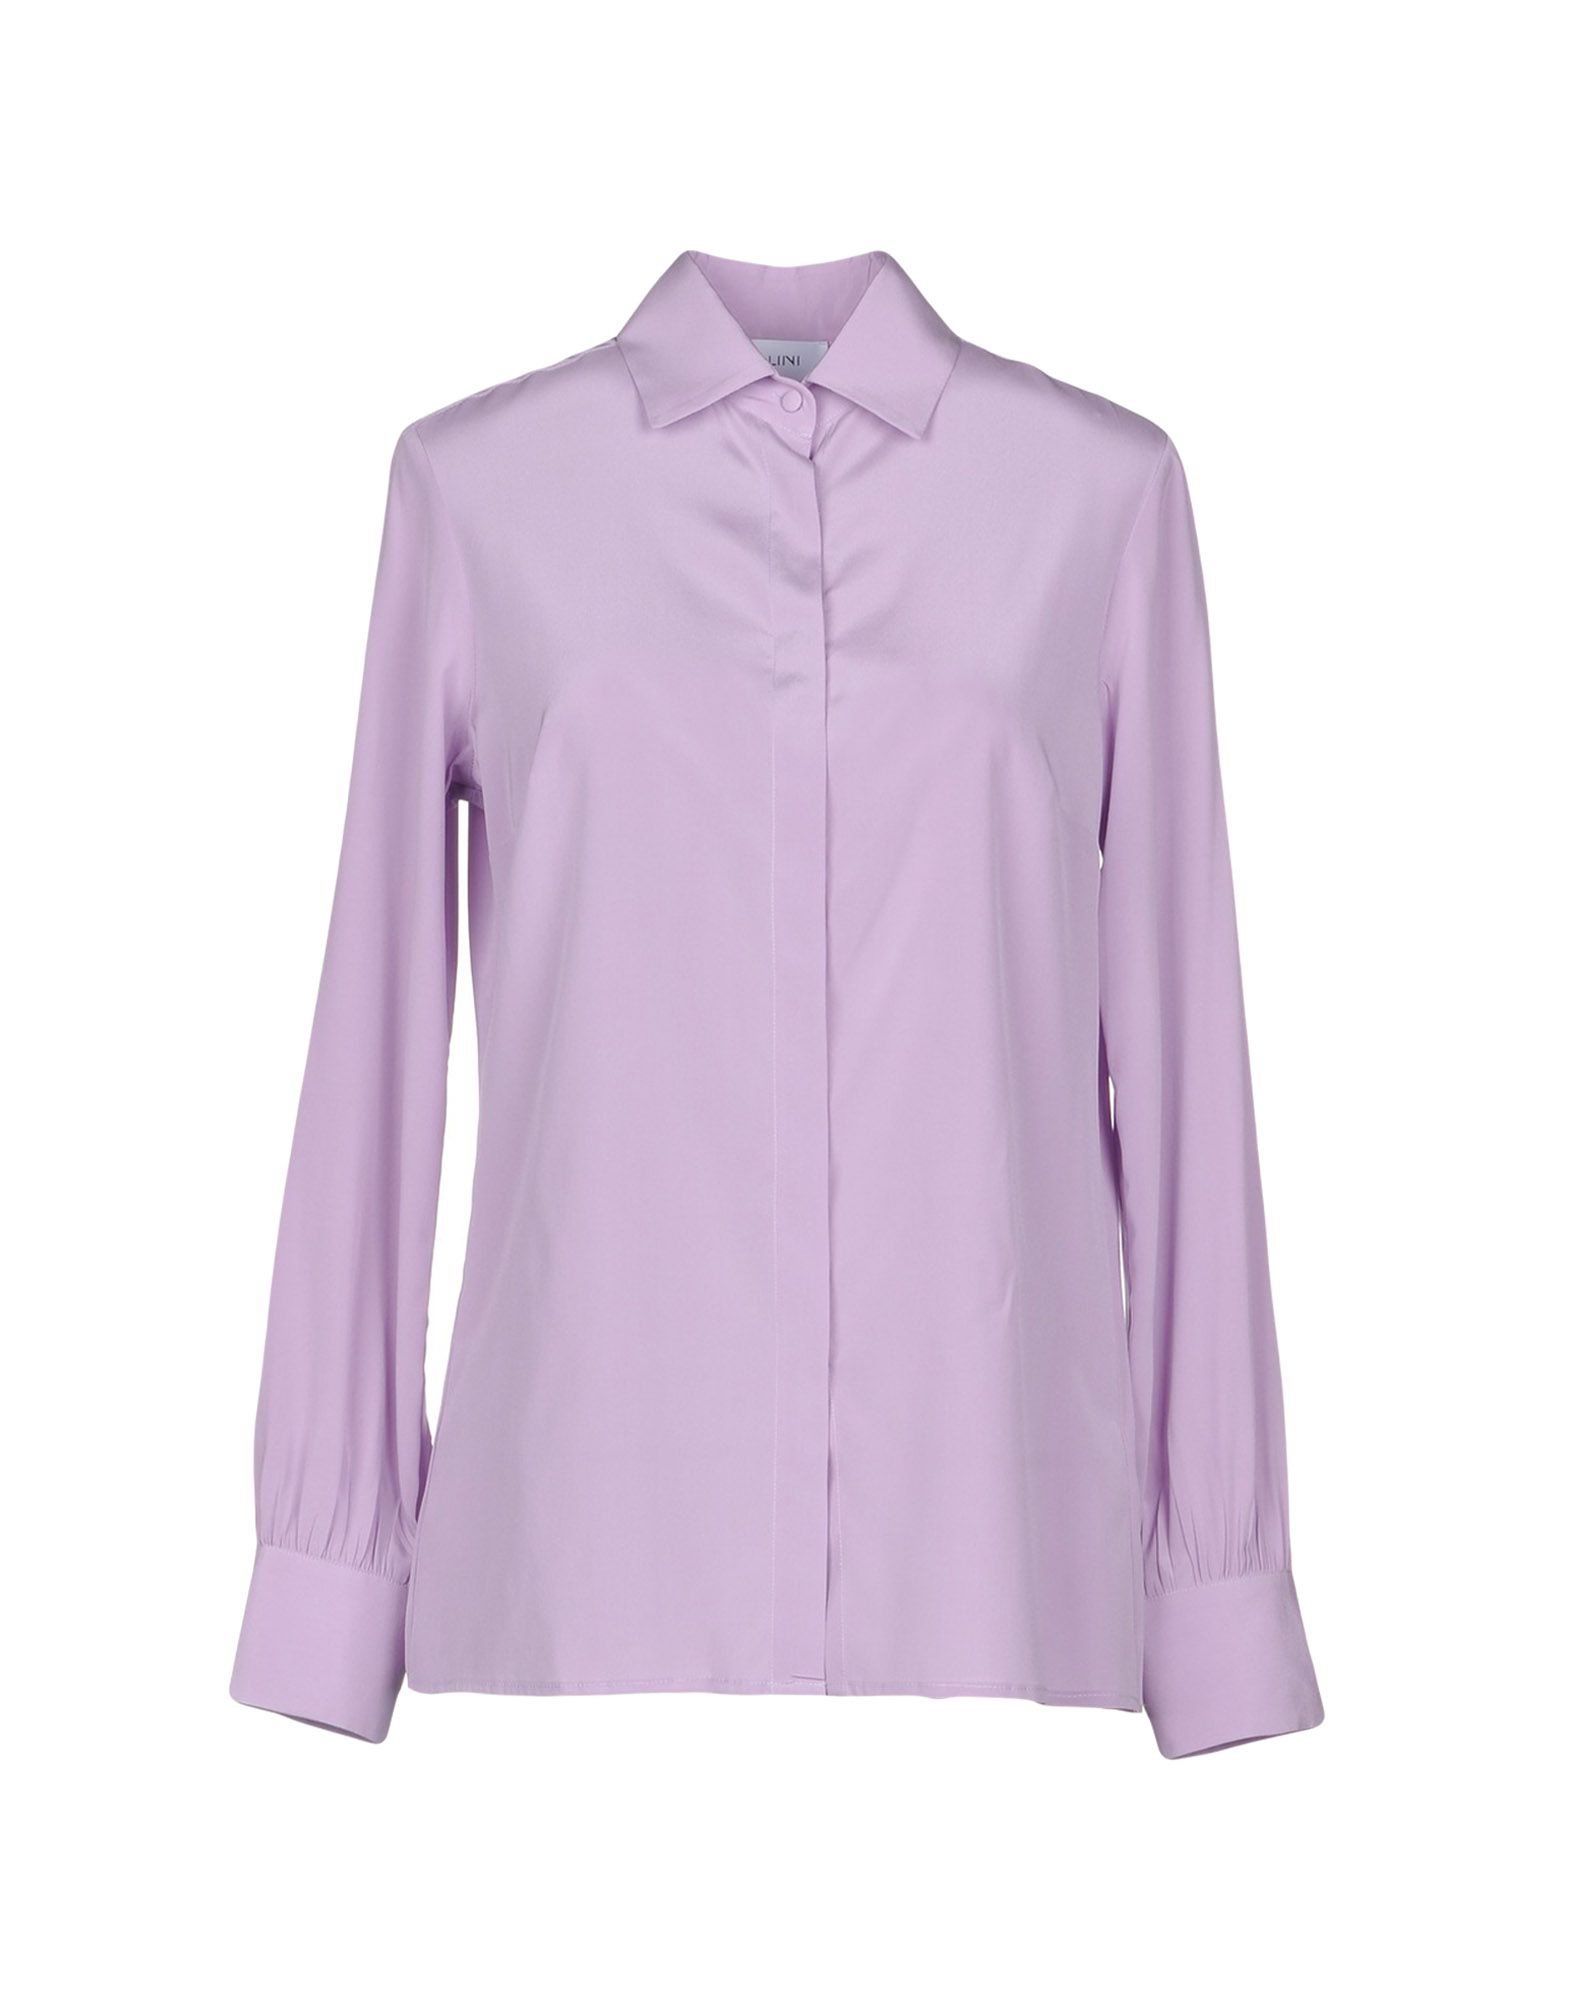 AGLINI Solid color shirts & blouses,38751929JM 3